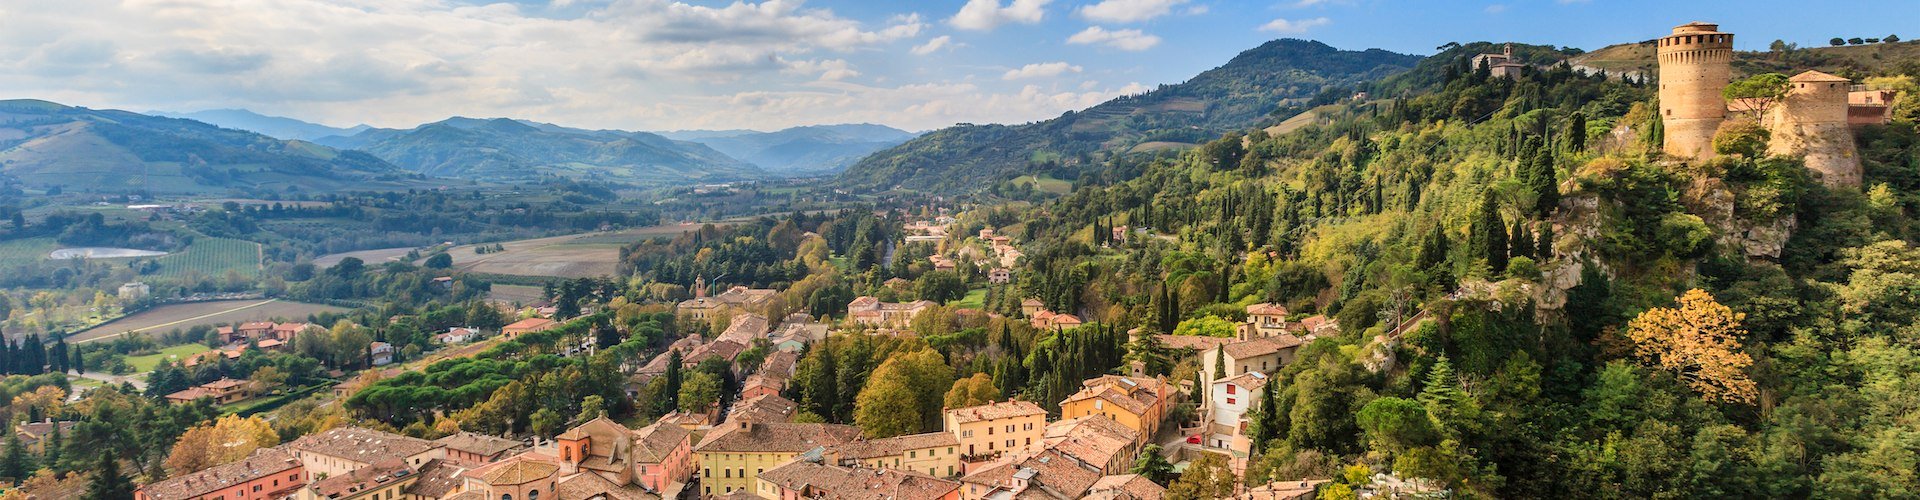 Familienurlaub in der Emilia Romagna